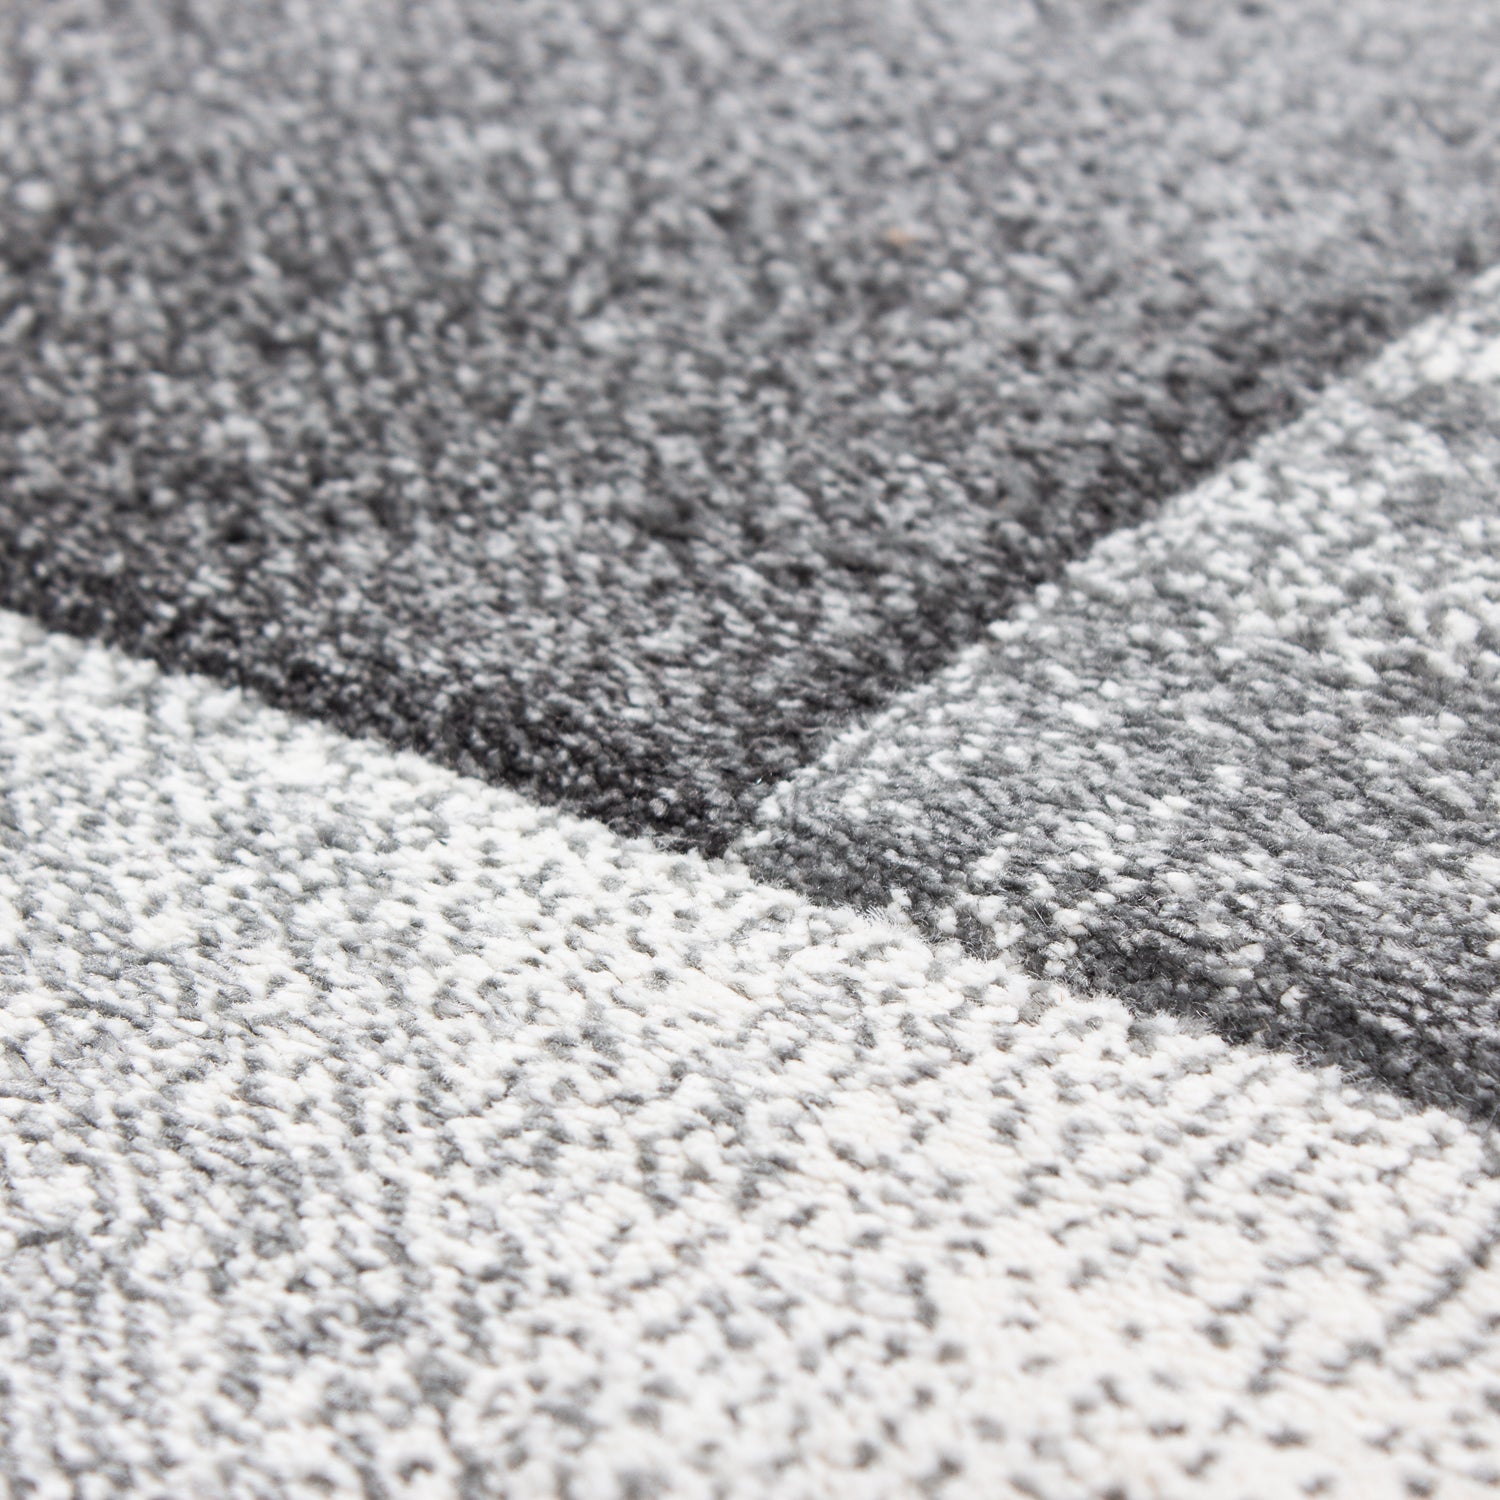 Kurzflor Design Teppich Rechteck Karo Muster Wohnzimmerteppich Rosa Weiß Meliert